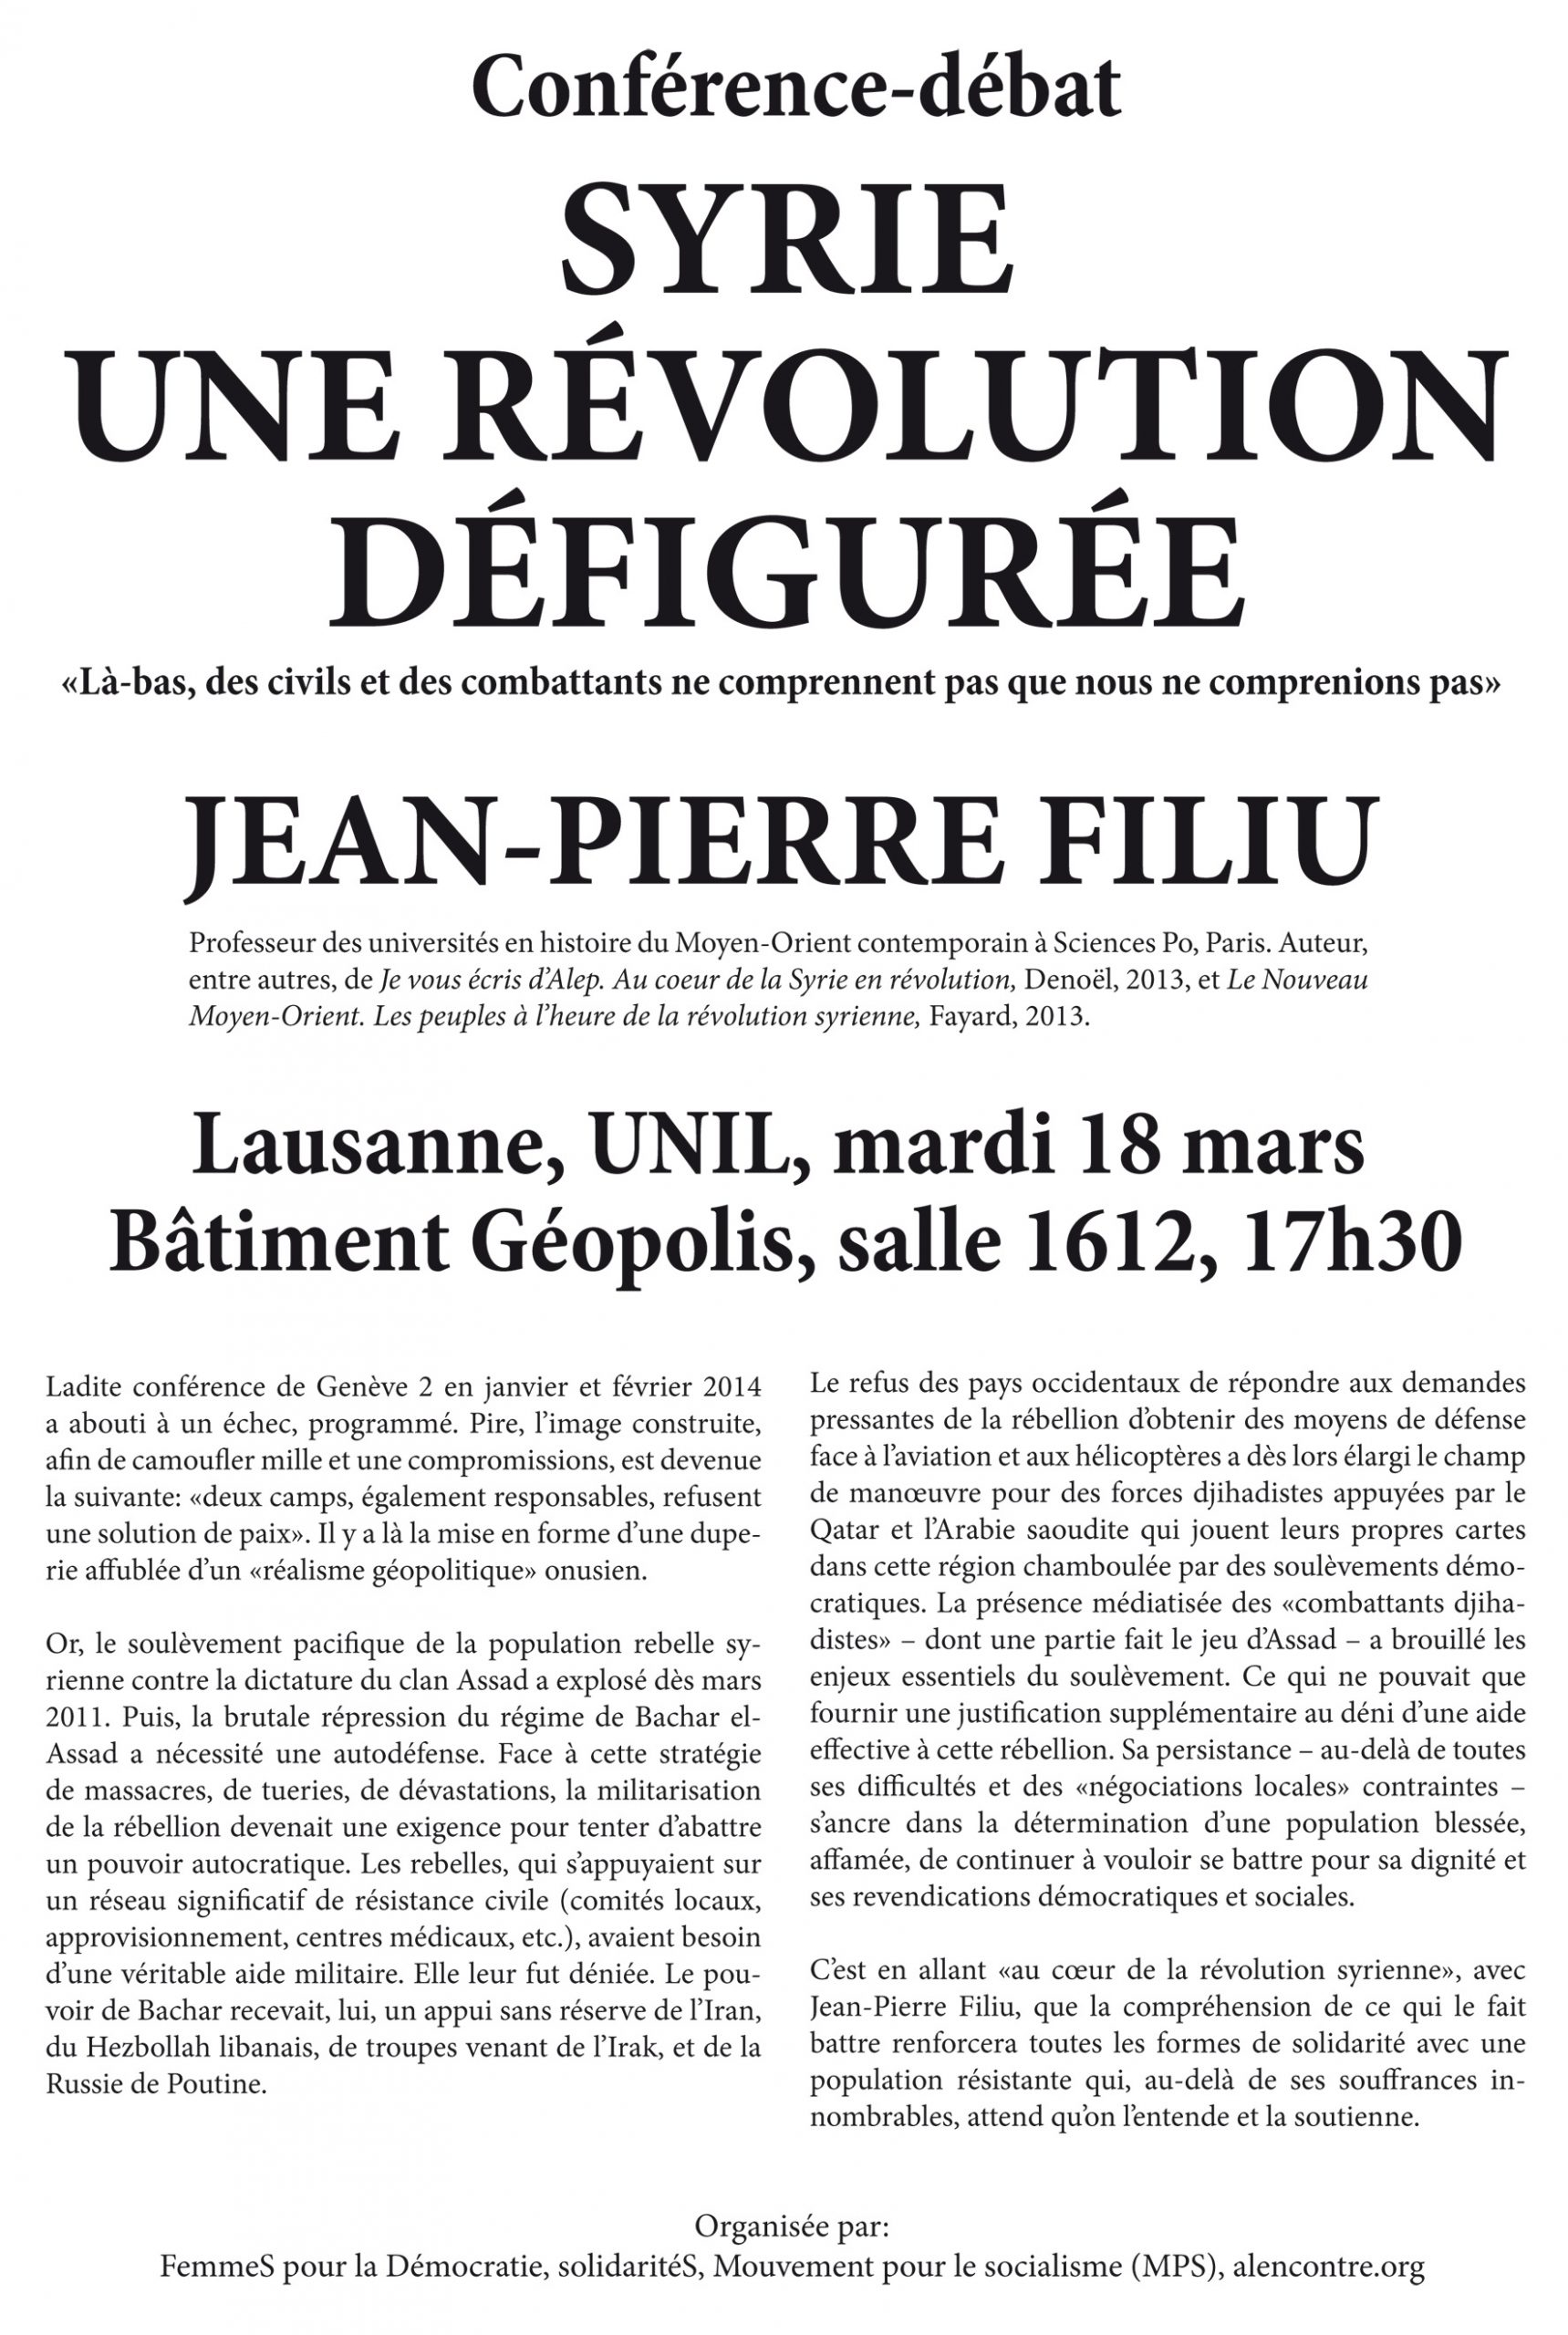 Syrie: une révolution défigurée. Conférence-débat avec Jean-Pierre Filiu, mardi 18 mars, 17h30, UNIL Géopolis, salle 1612